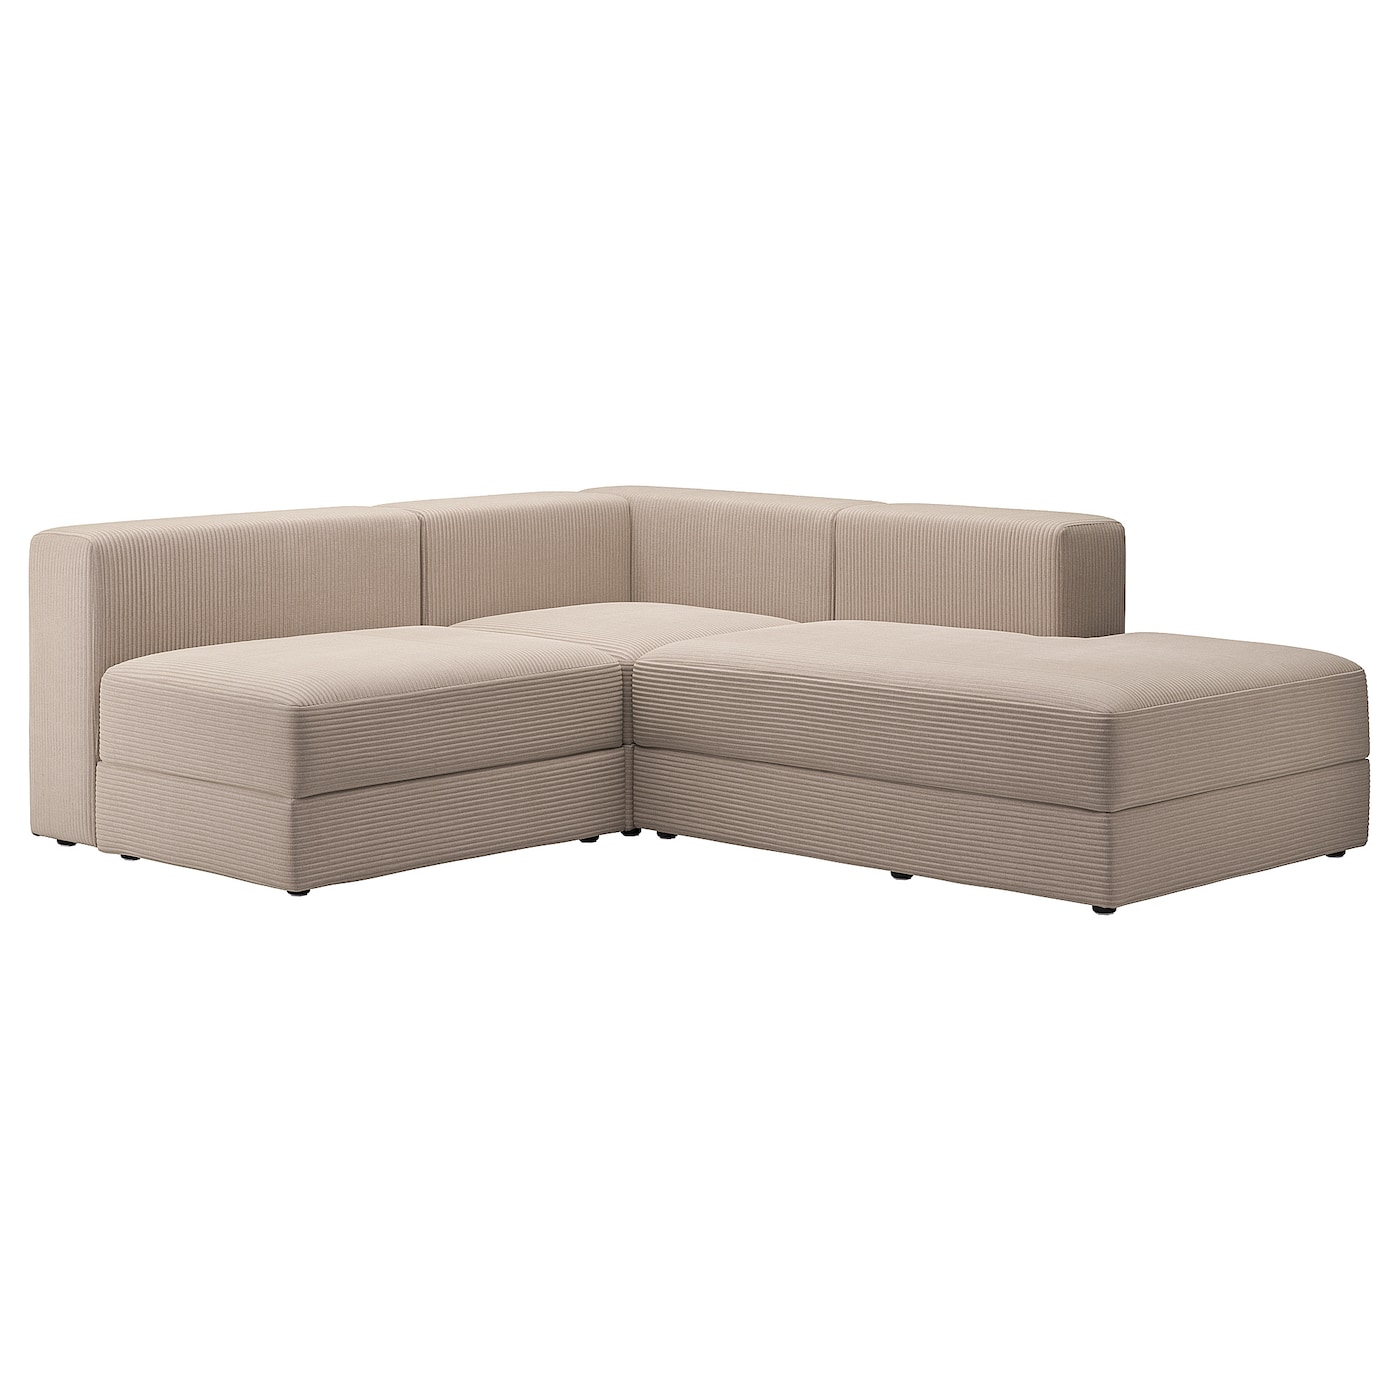 ДЖЭТТЕБО 2,5-местный модульный угловой диван-диван, правый/Самсала серый бежевый JÄTTEBO IKEA диван угловой смарт белфаст 6 модульный правый а2491529579